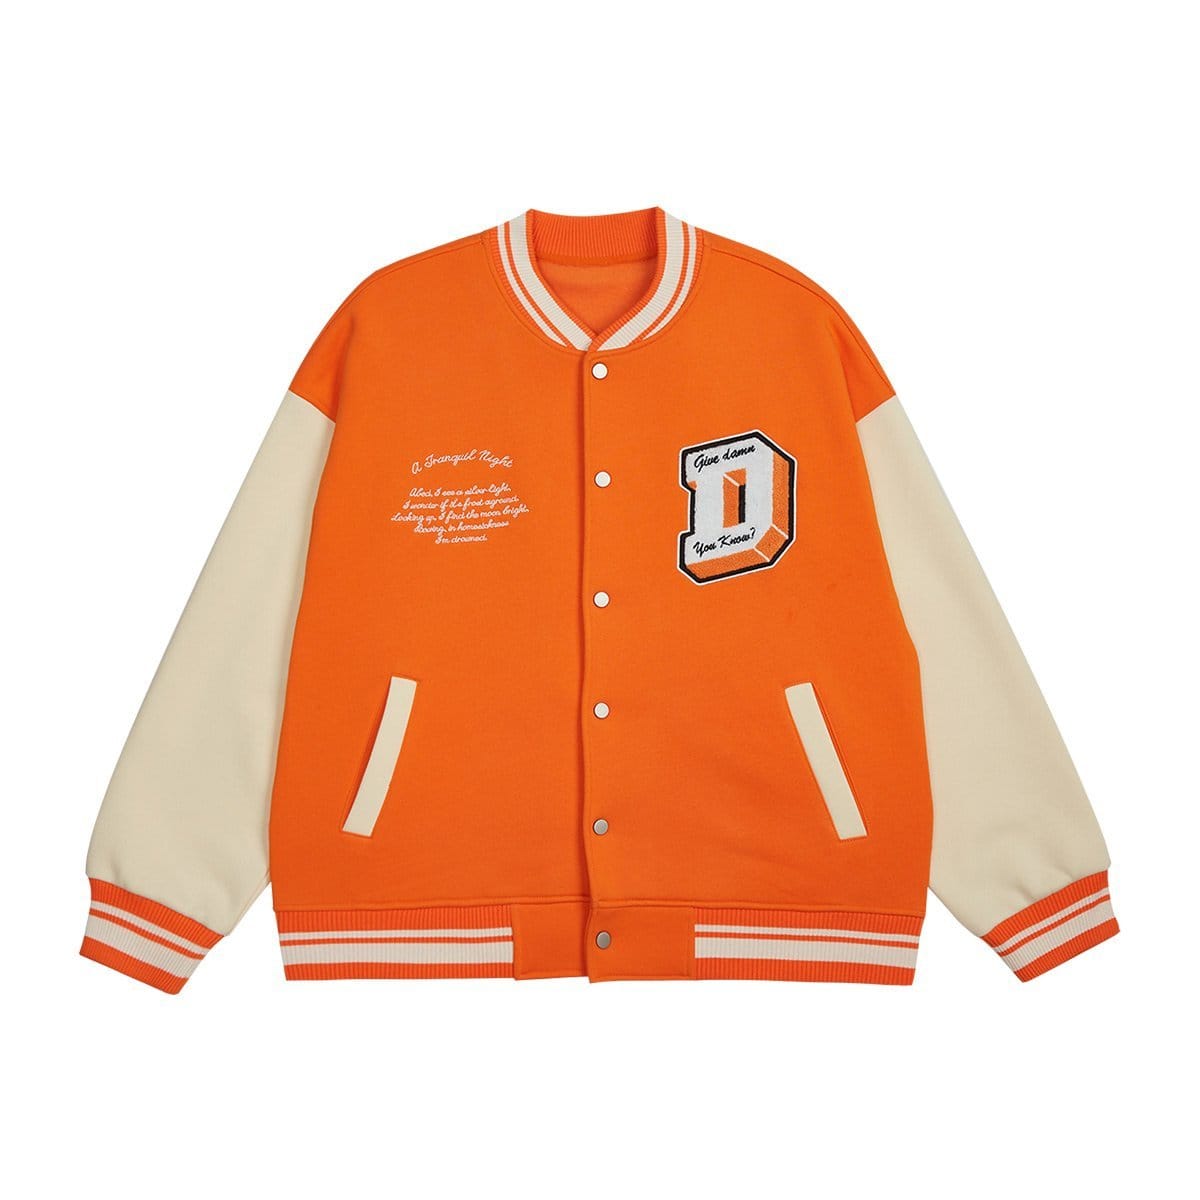 Retro Baseball Jacket - Orange Varsity Fashion